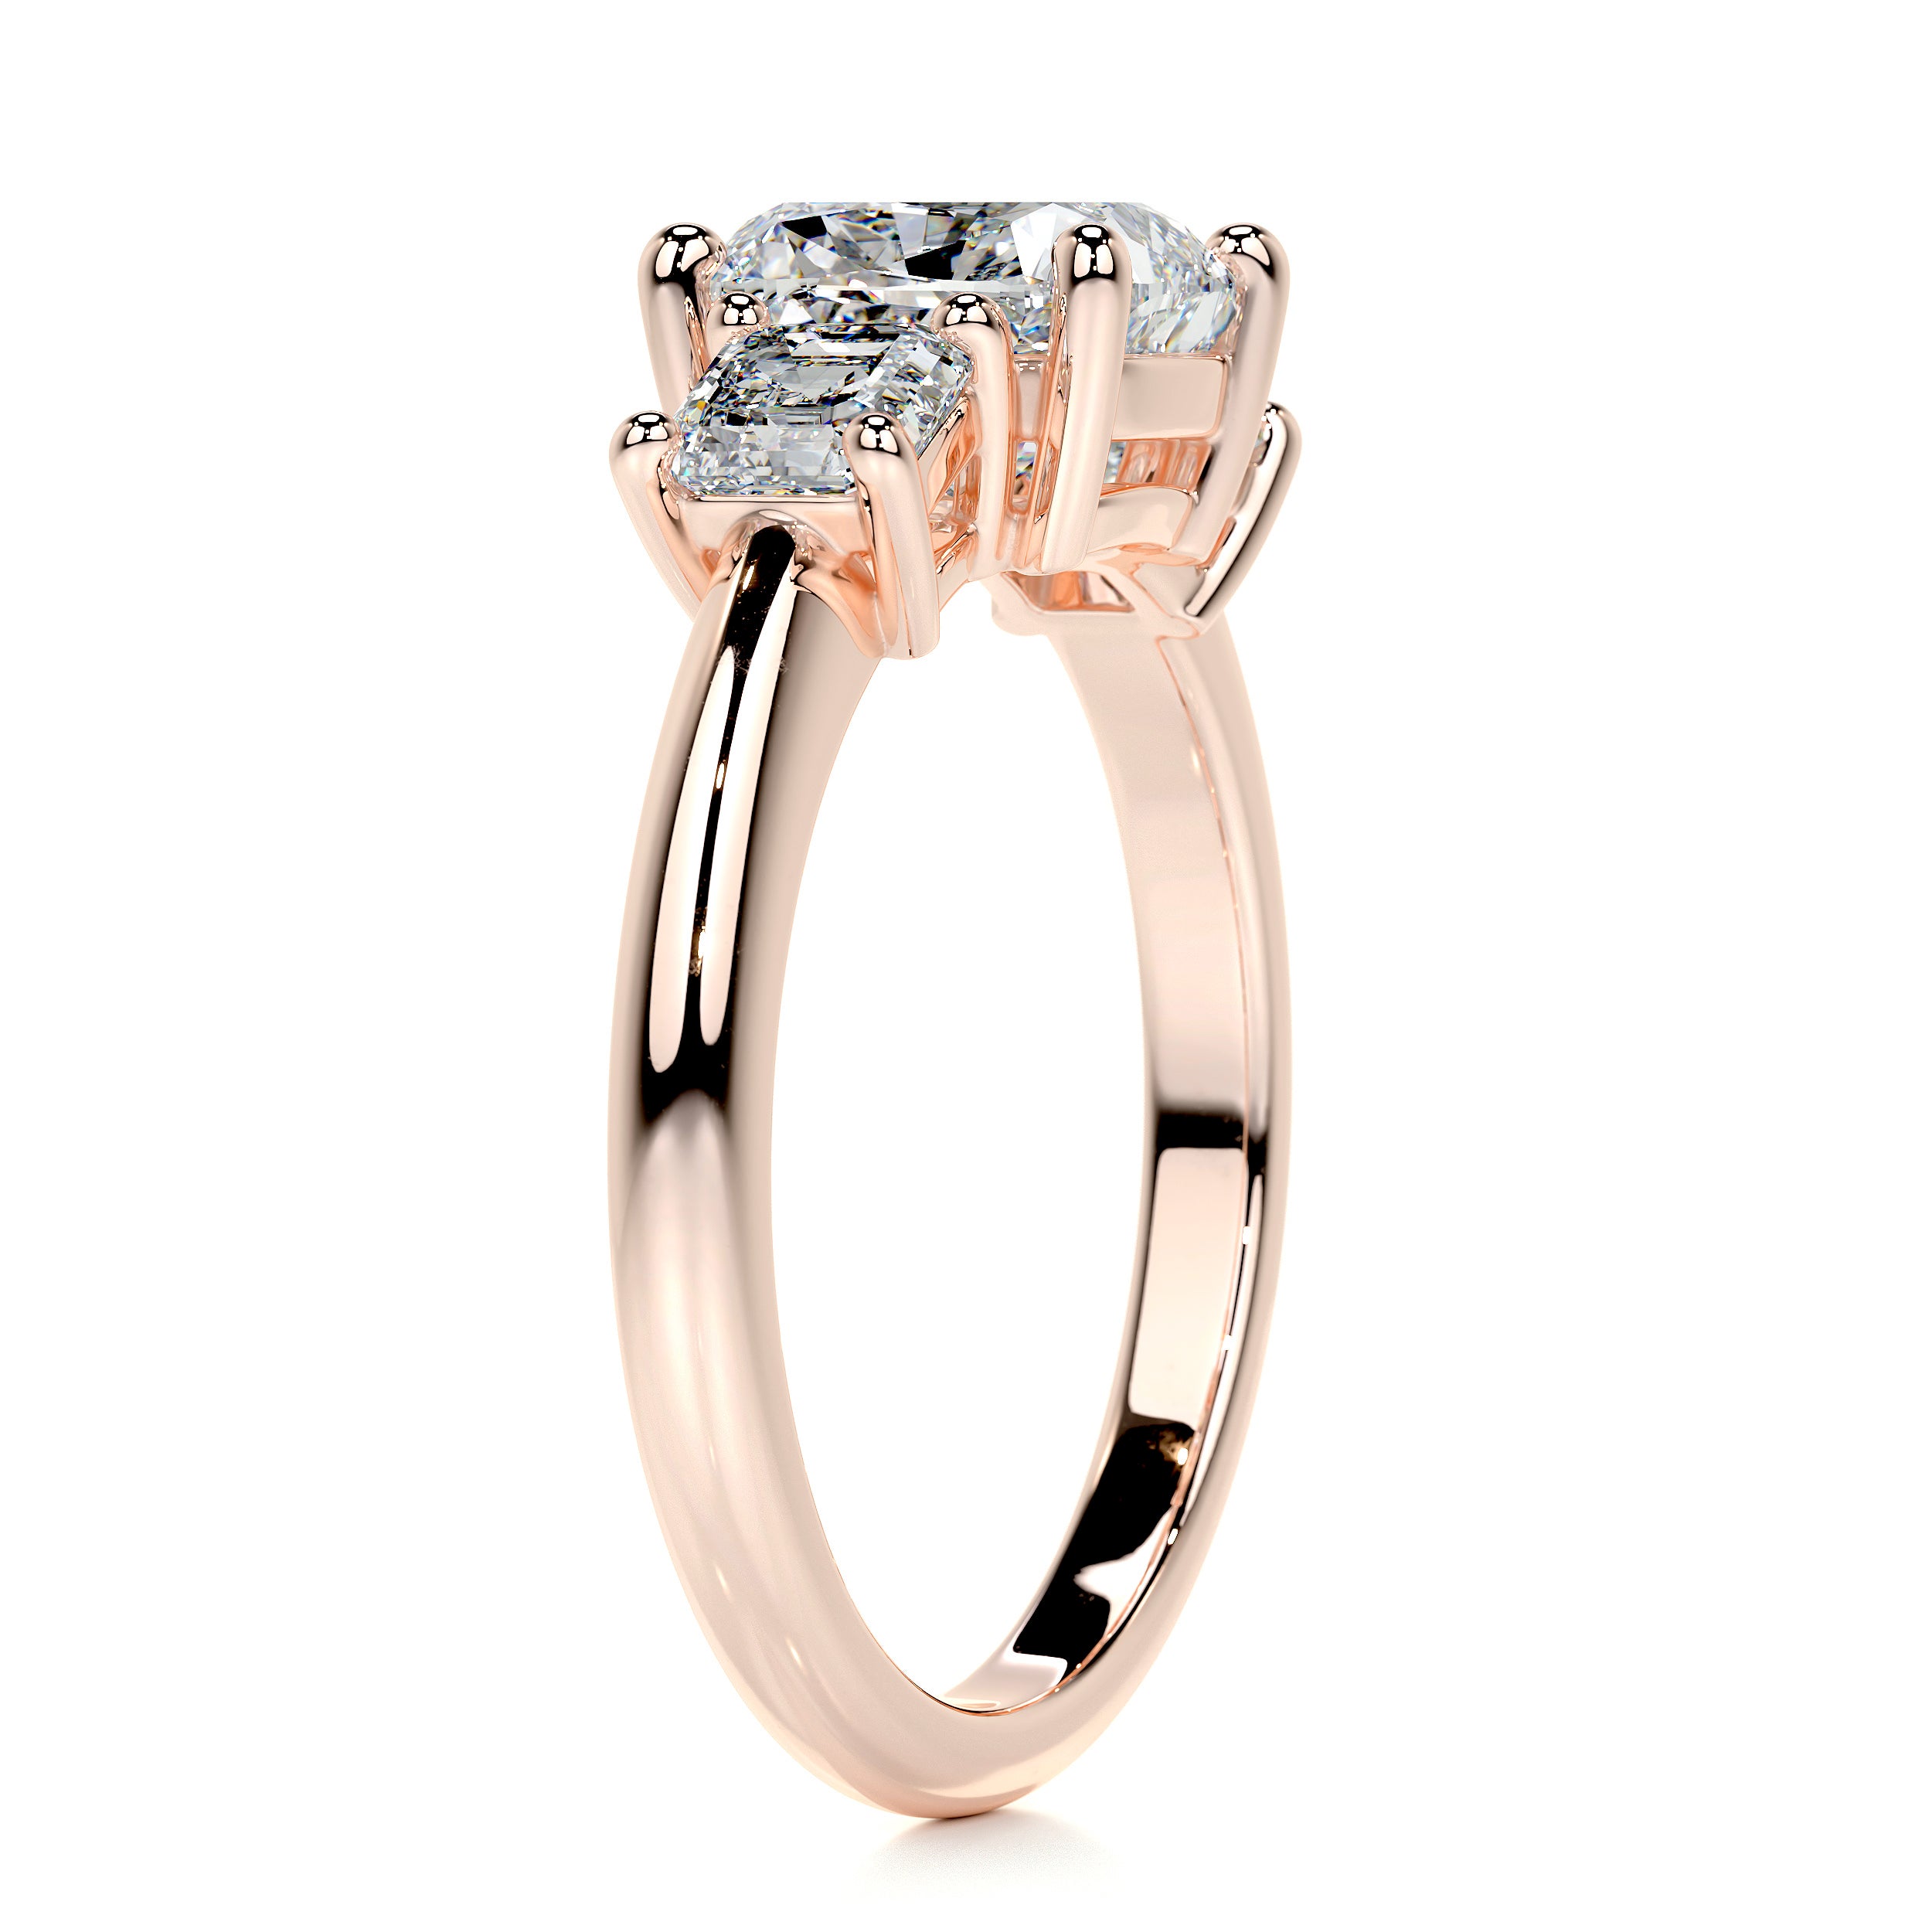 Amanda Diamond Engagement Ring   (3 Carat) -14K Rose Gold